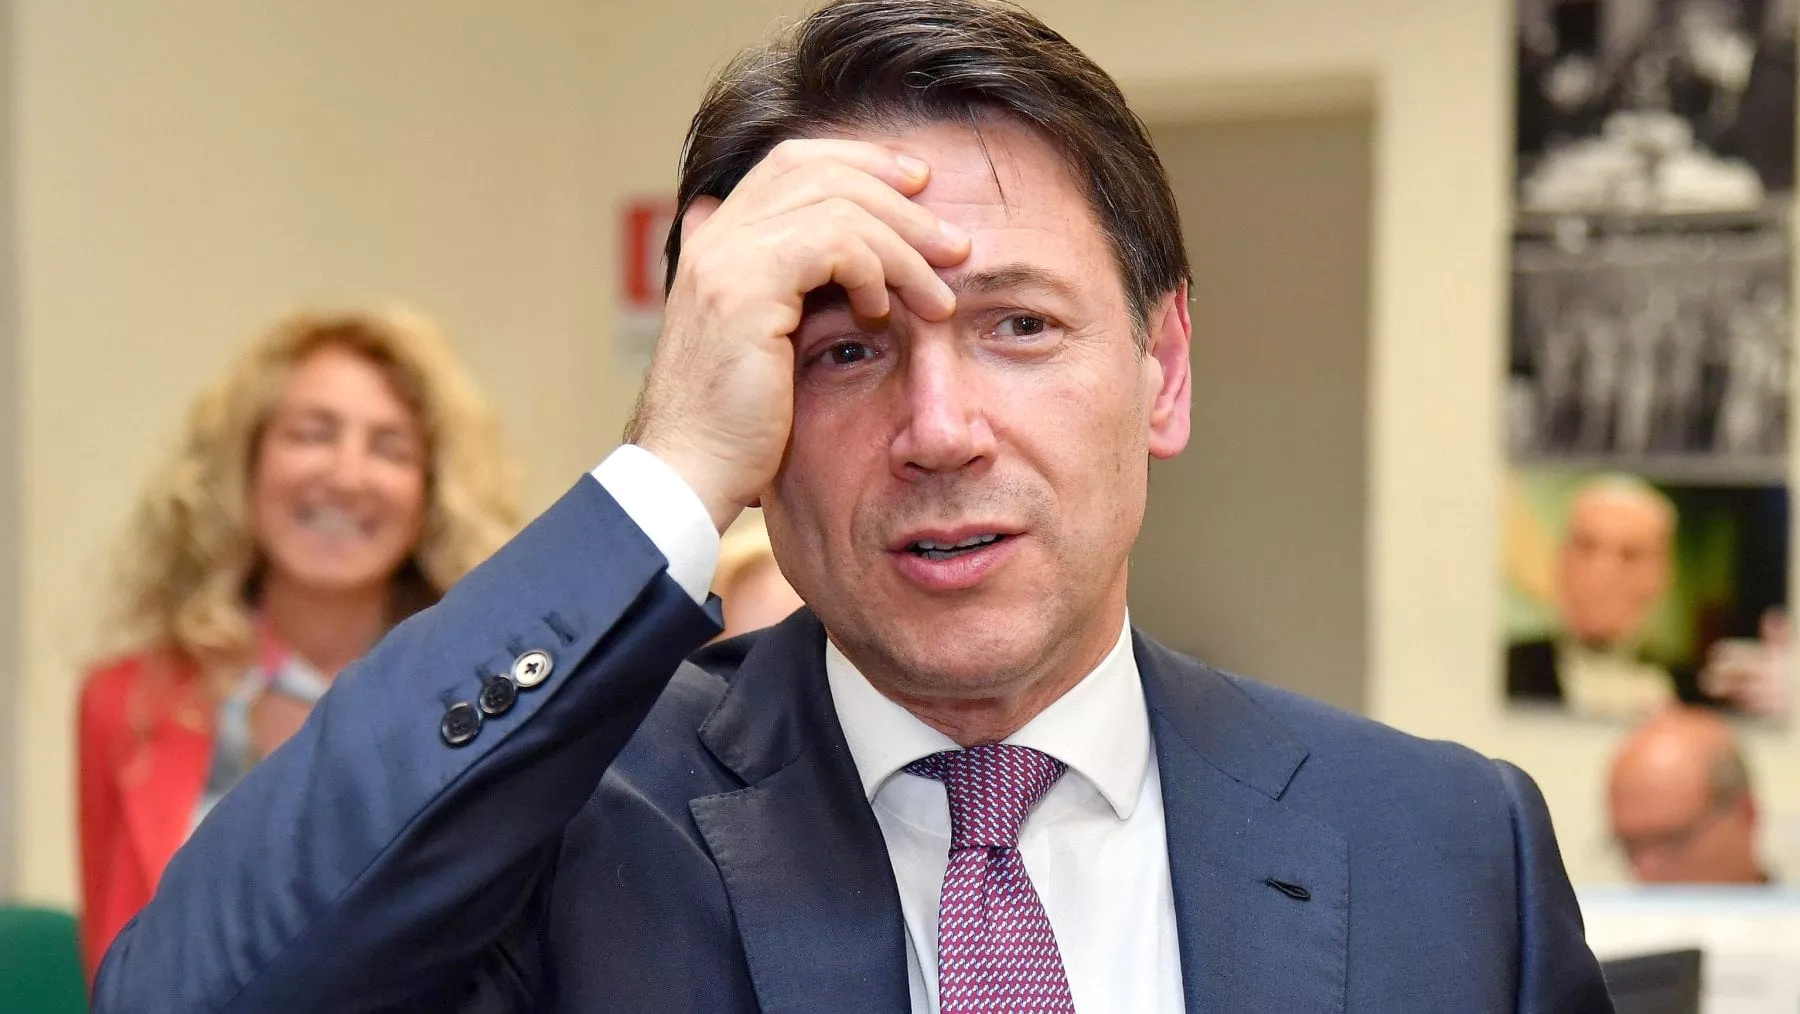 Conte attacca Renzi: "I politici non possono approfittare dell’immunità per ritagliarsi privilegi"